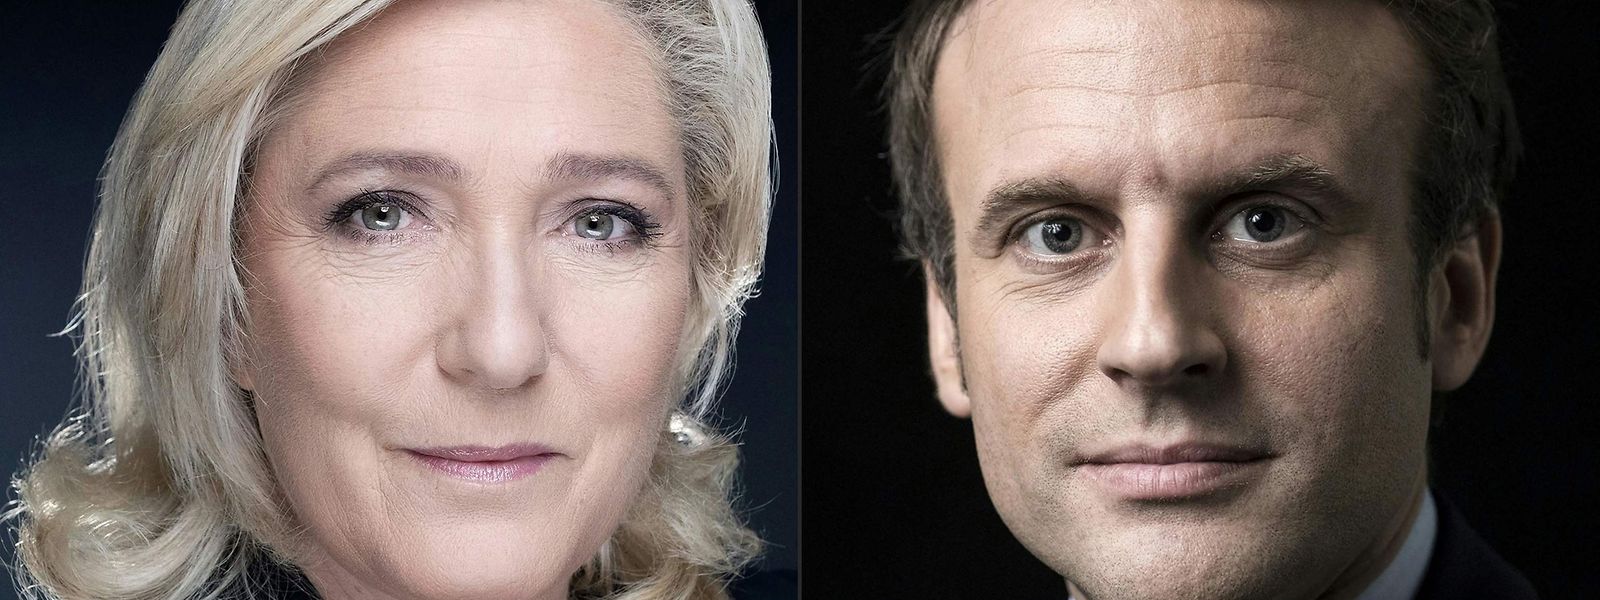 Os candidatos Emmanuel Macron e Marine Le Pen vão defrontar-se na segunda volta das eleições presidenciais em França.